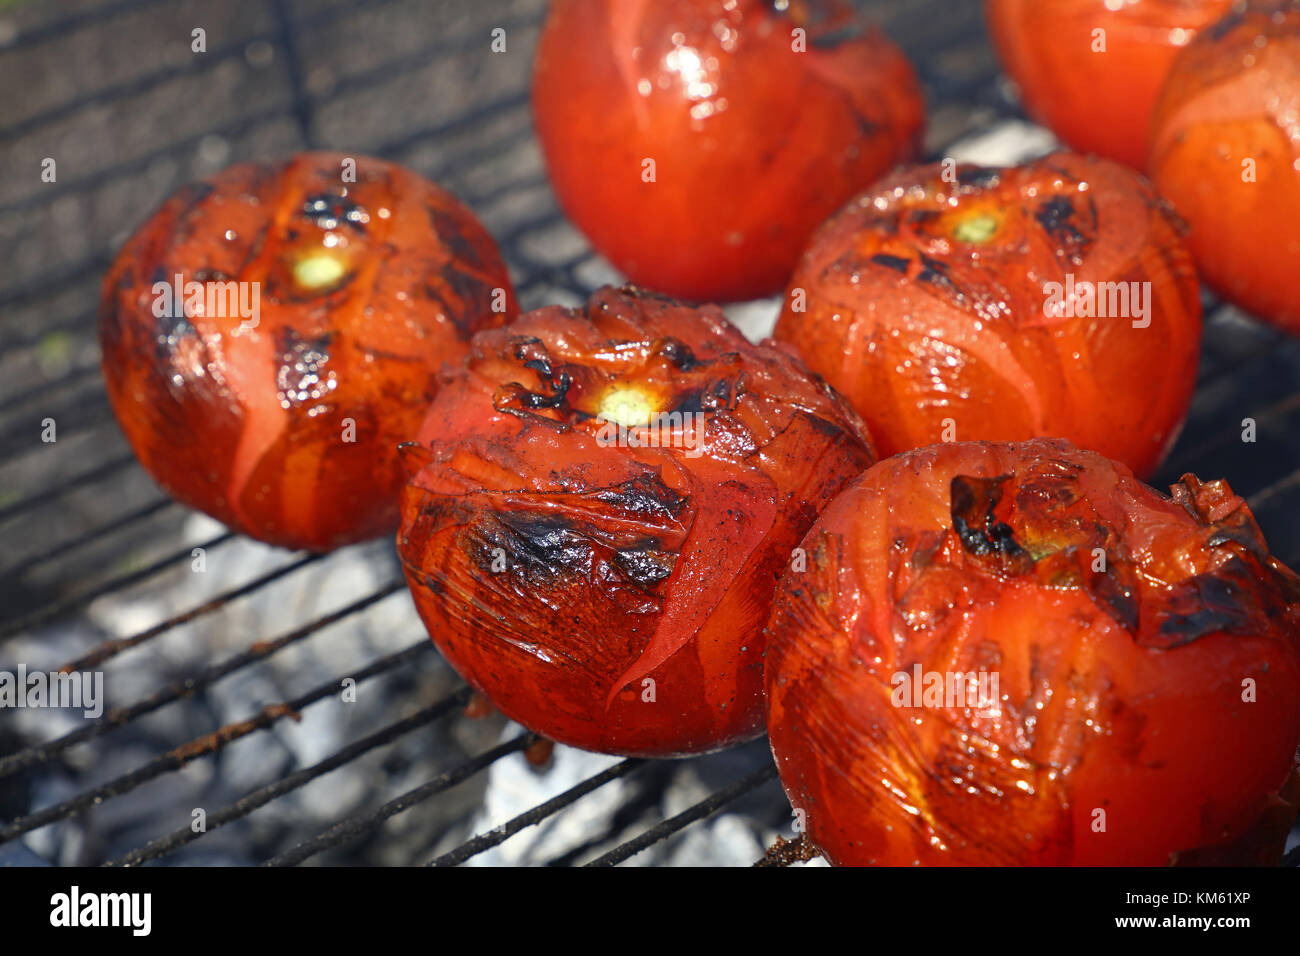 Les tomates rouges avec grillemarks la cuisson sur barbecue char avec de la fumée, Close up, high angle view Banque D'Images